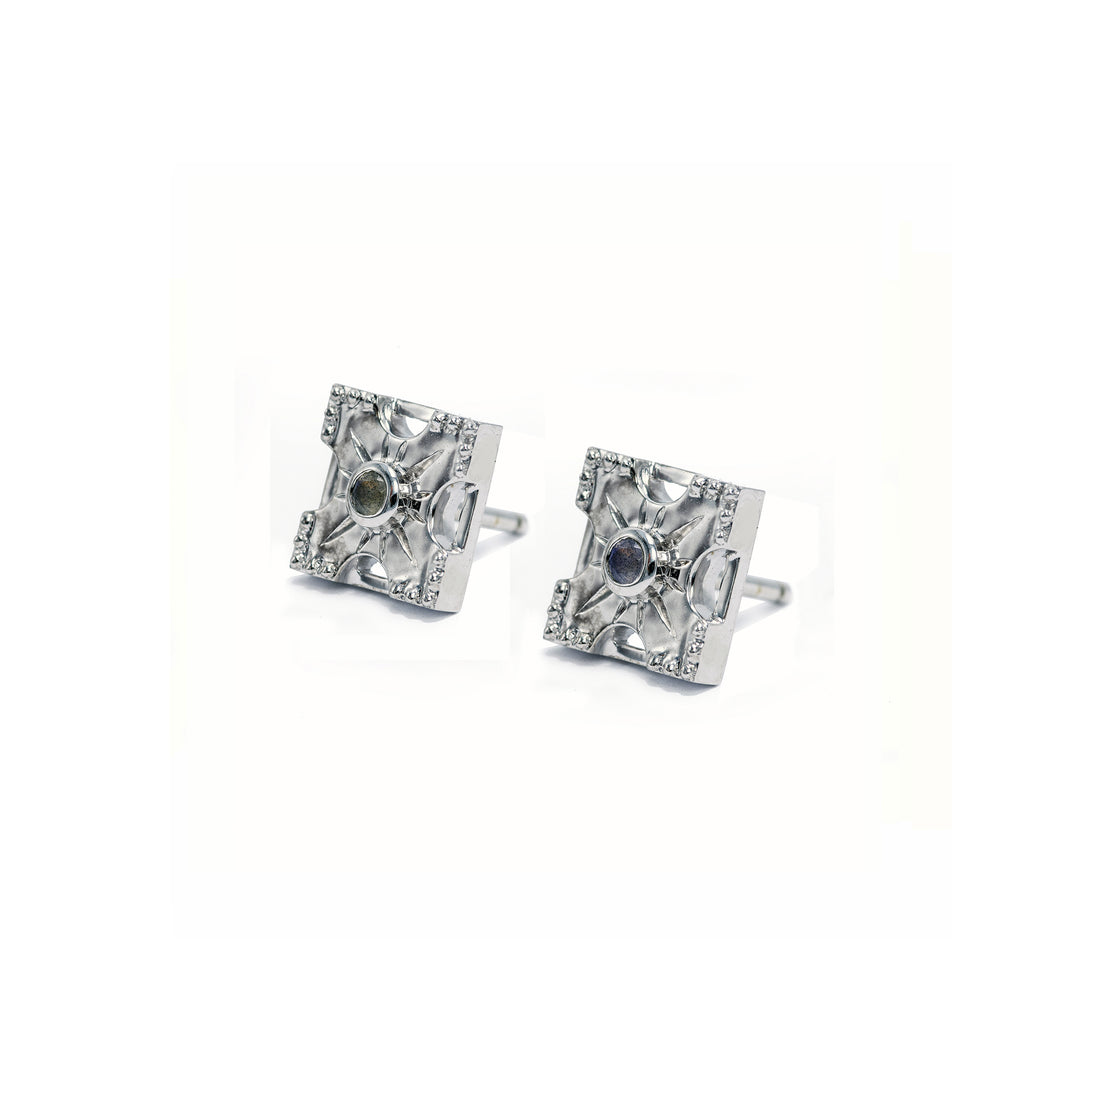 Petite Harmony Gemstone Stud Earrings - Single Stone